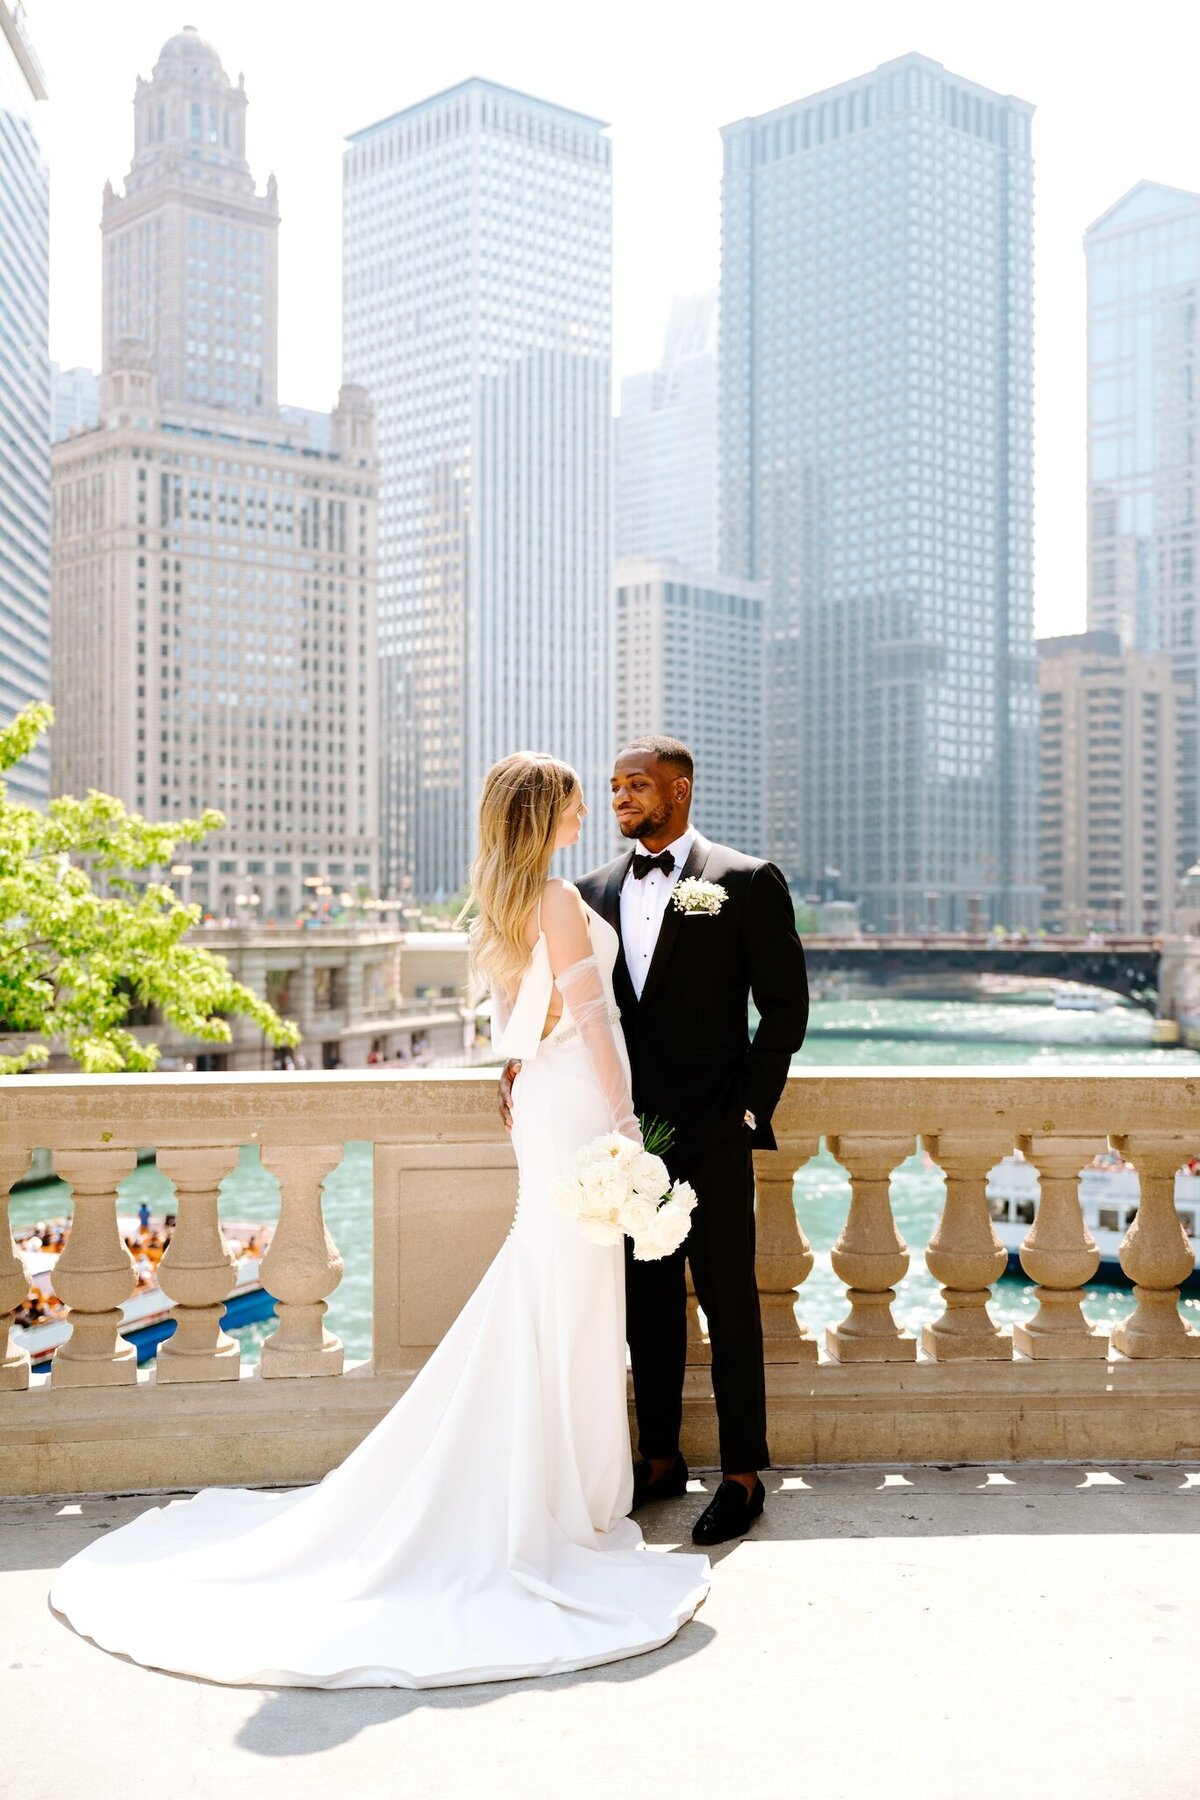 marissa-kelly-photography-destination-wedding-photographer-chicago-new-york-worldwide-rylee-jamal-walden-chicago-wedding-portfolio11